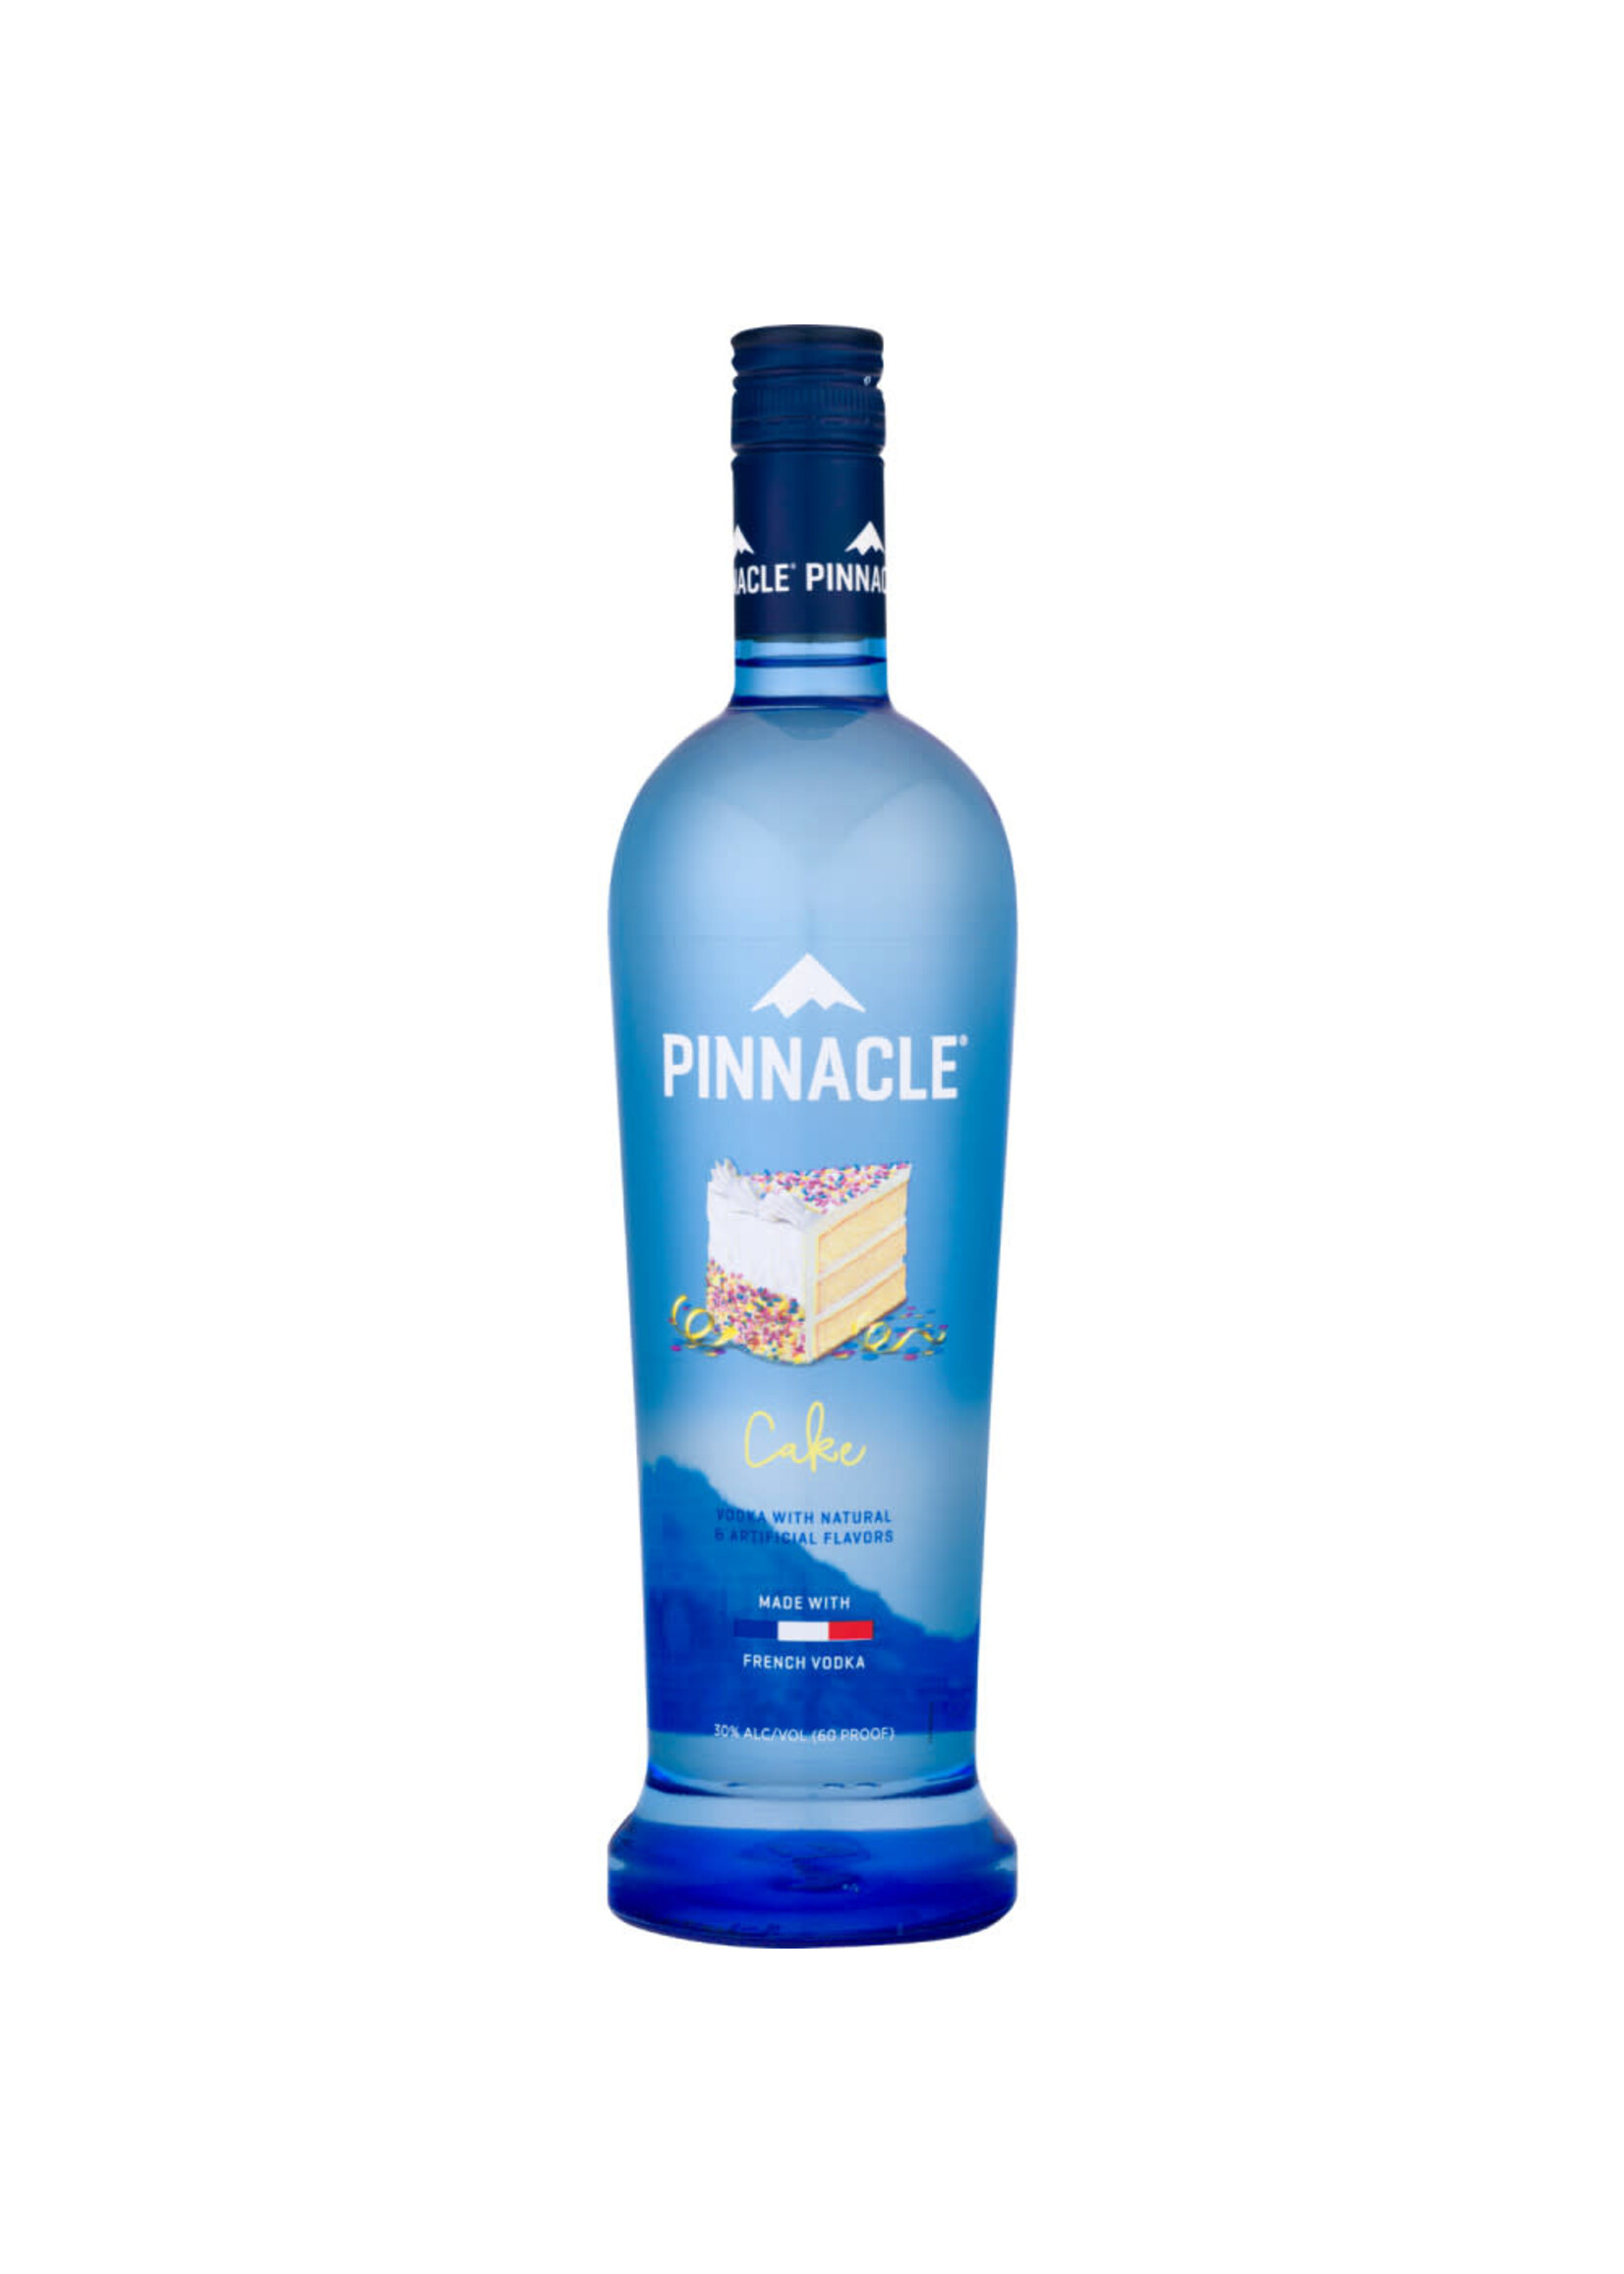 Pinnacle Pinnacle Cake Flavored Vodka 60Proof 750ml